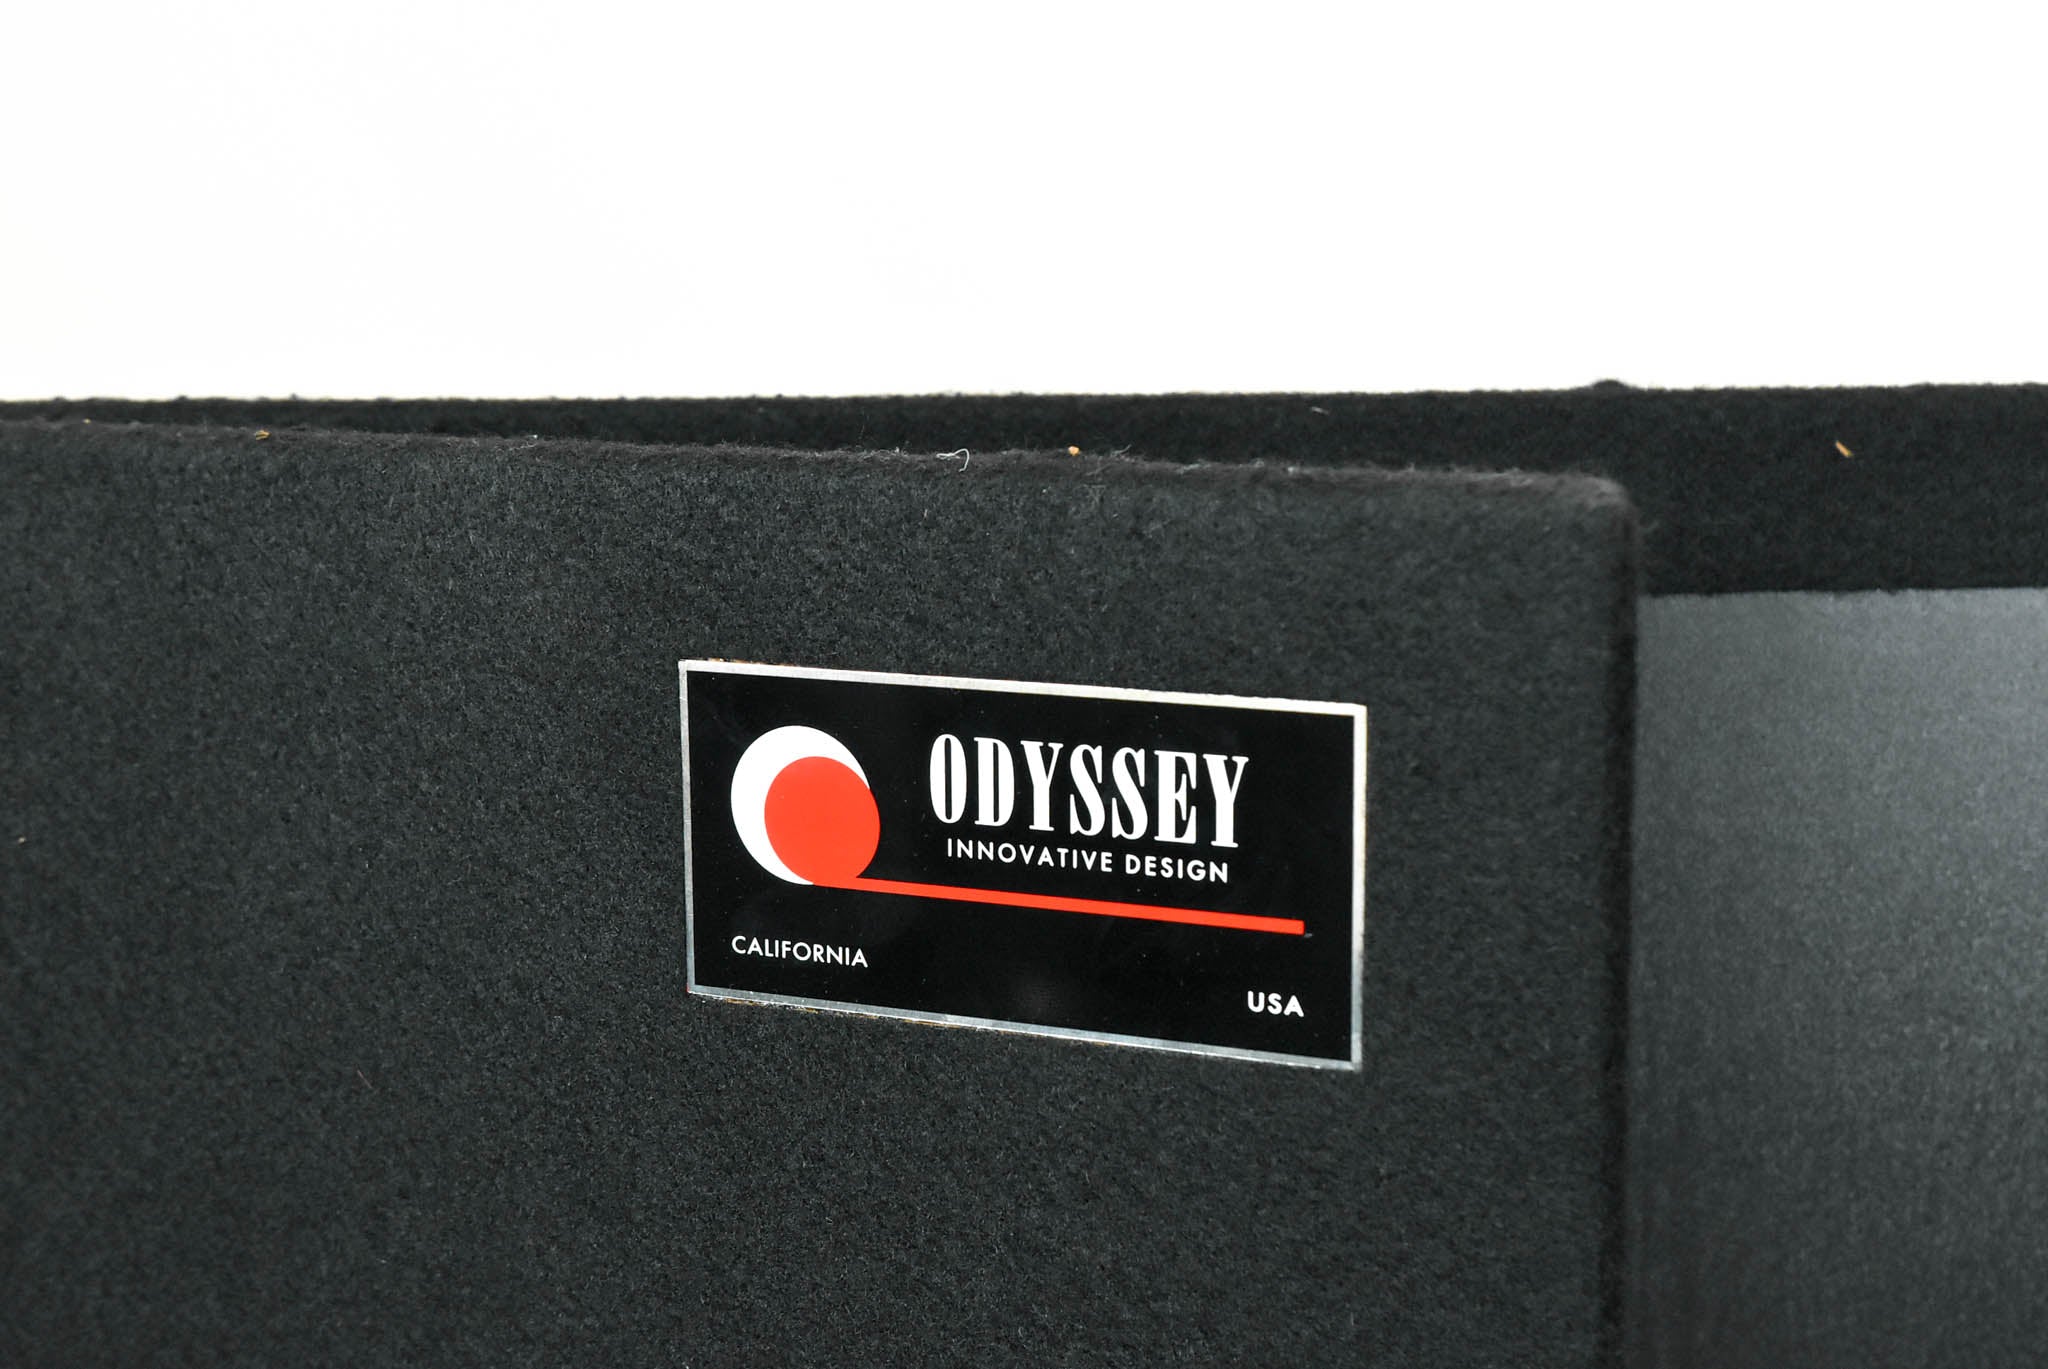 Odyssey CF4848 Fold-Out DJ Facade